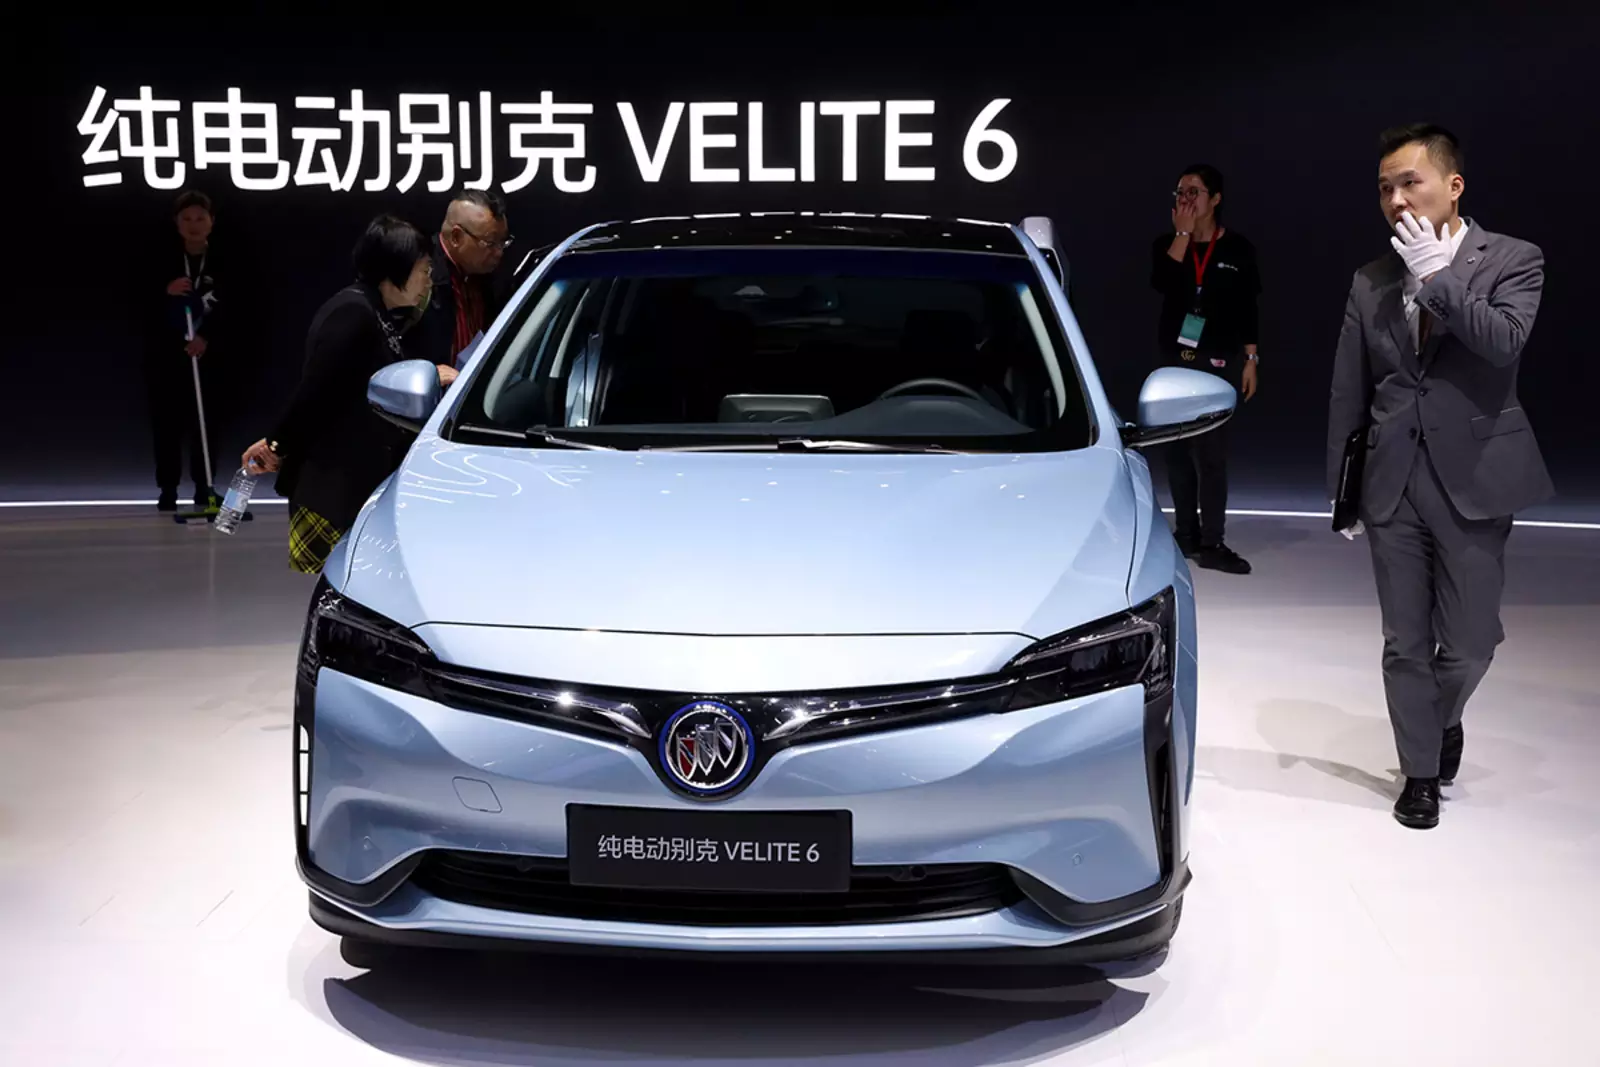 Китай. Пекин. Электромобиль Buick Velite 6 представлен на 18-м Шанхайском международном автосалоне